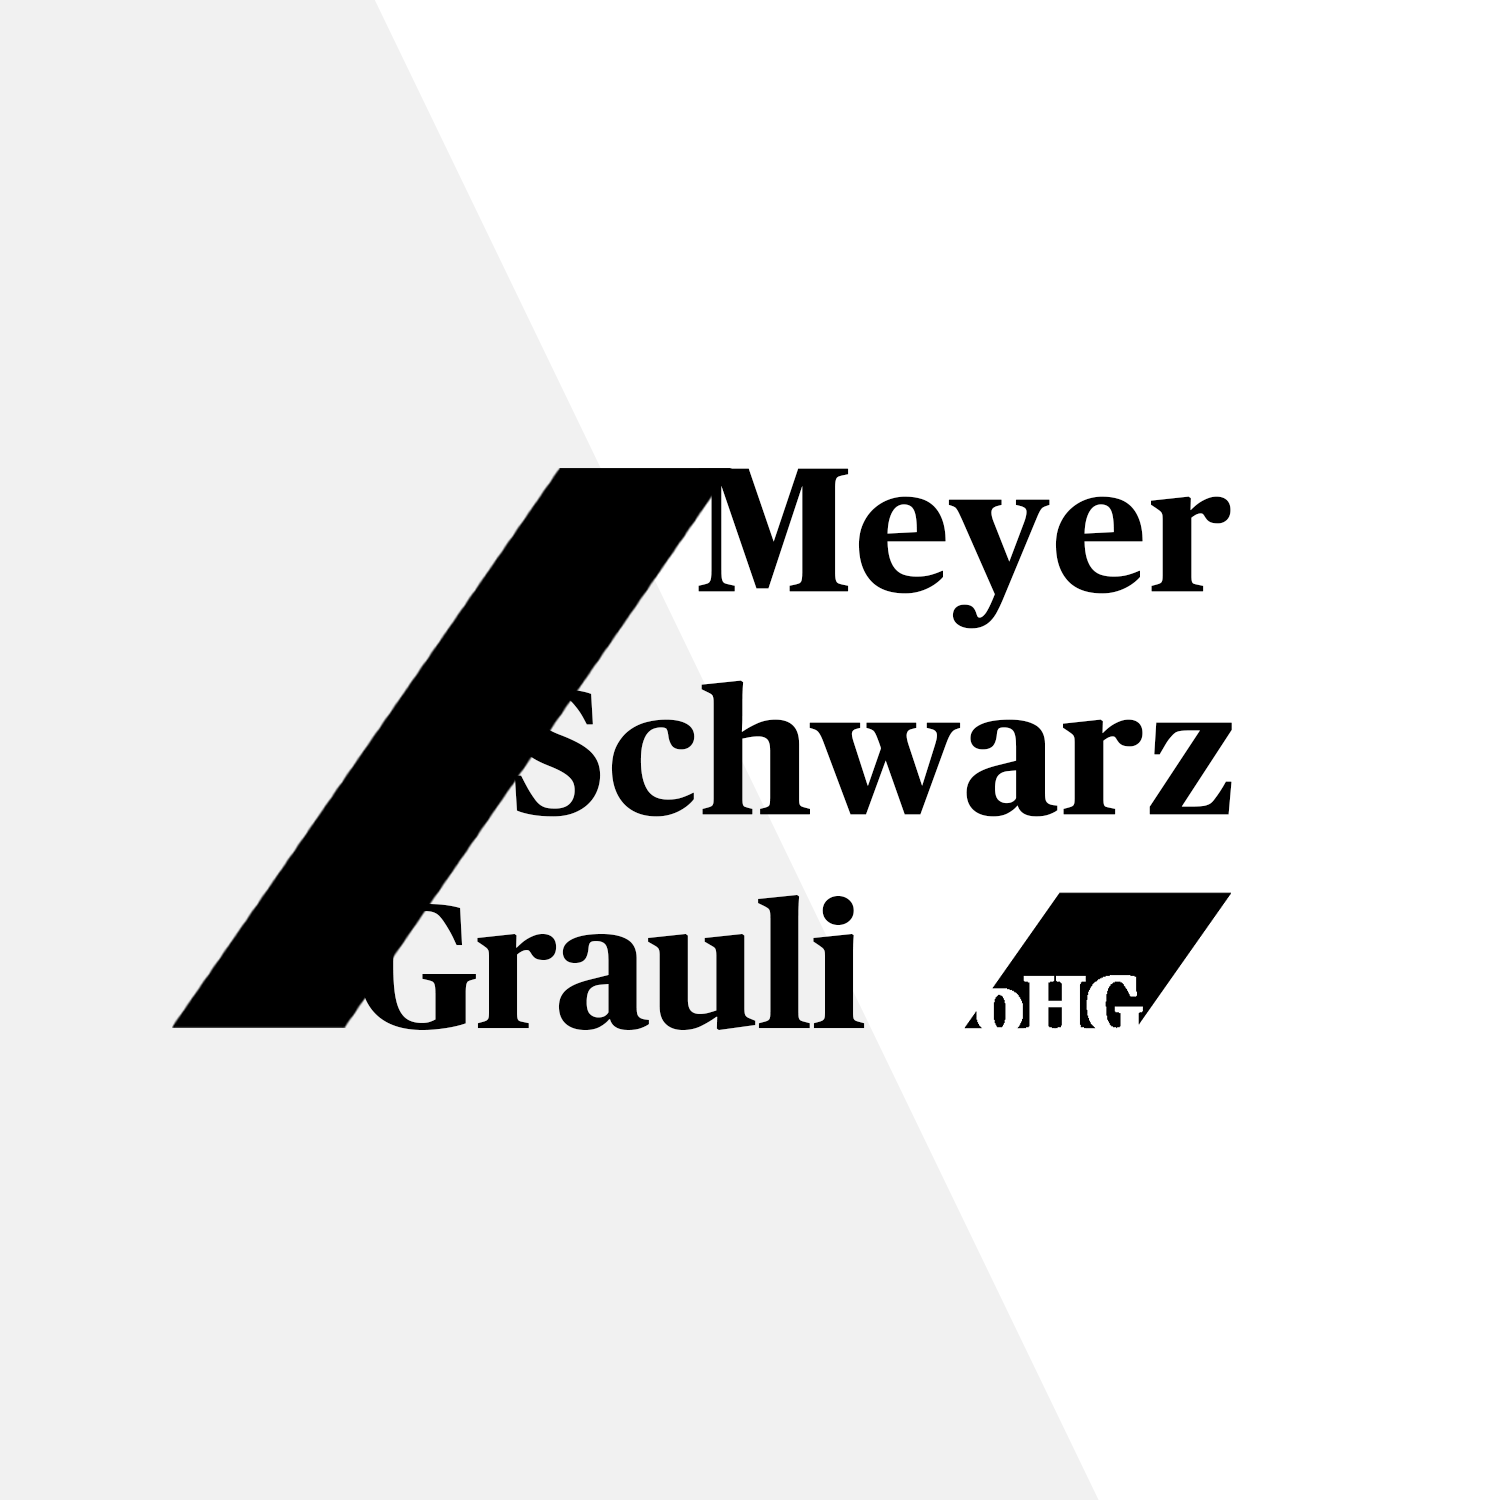 Bild 2 DBV Versicherung - Meyer, Schwarz & Grauli oHG in Bochum in Bochum